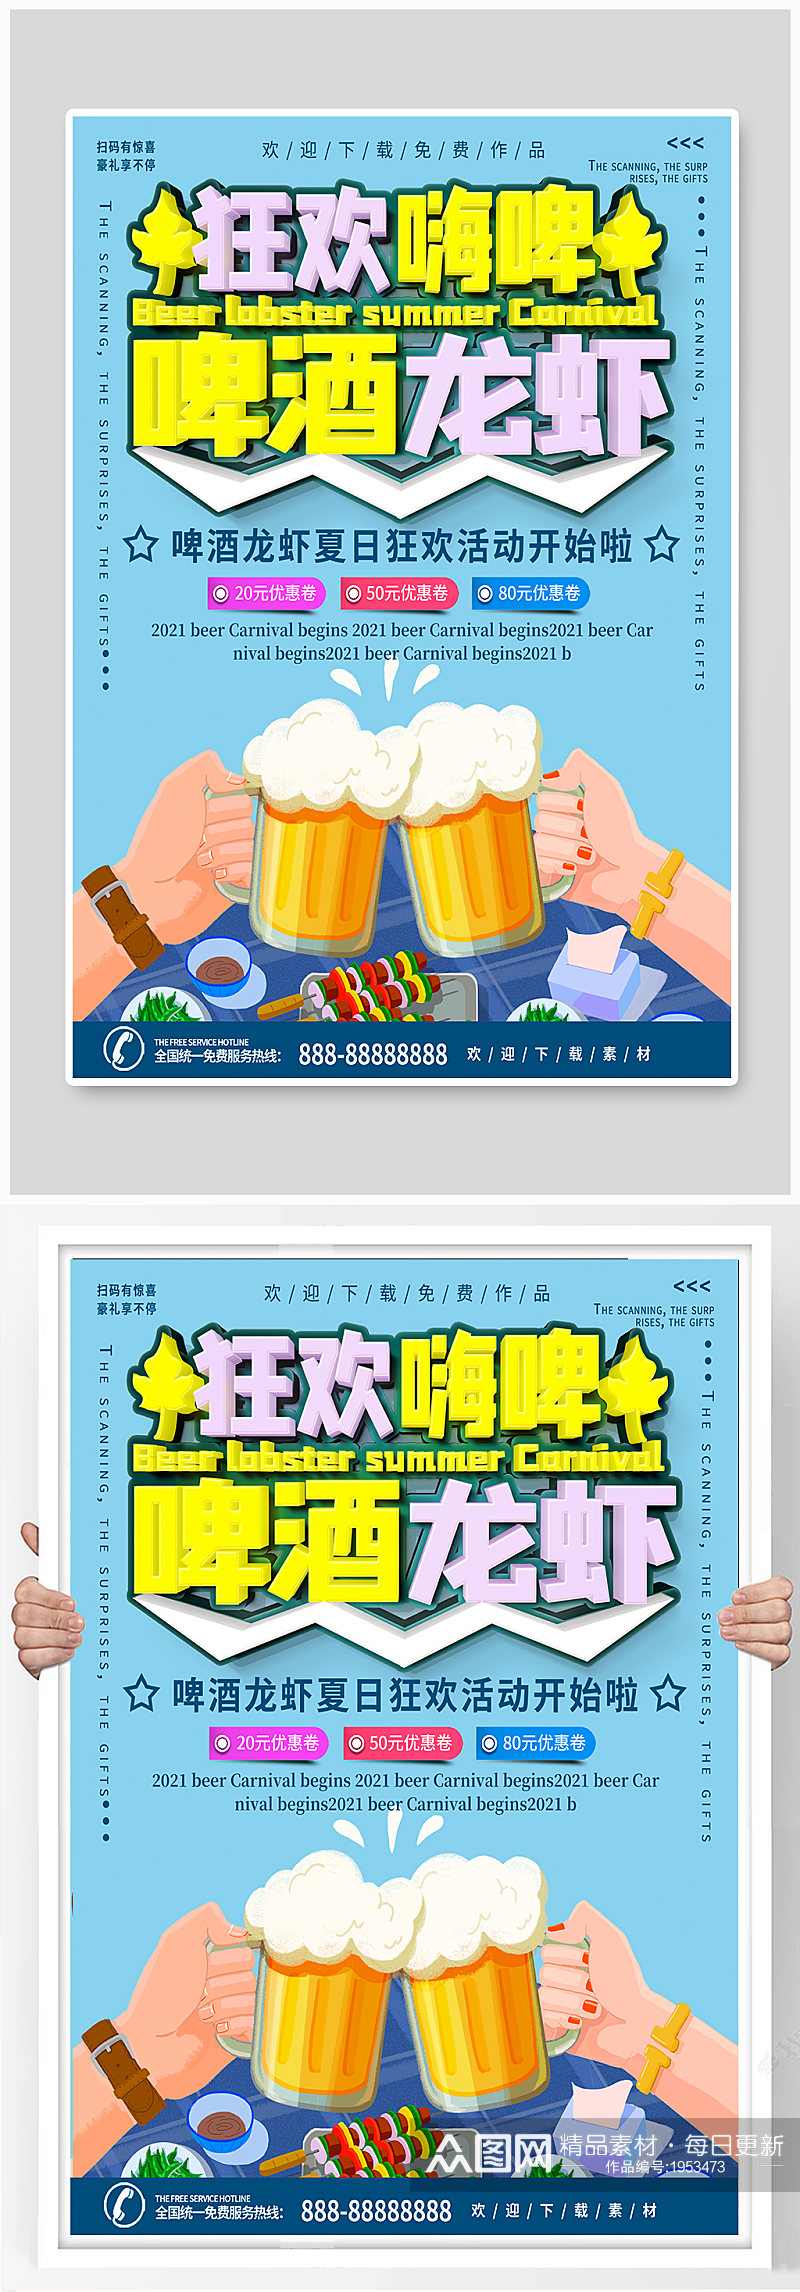 啤酒龙虾烧烤活动海报素材